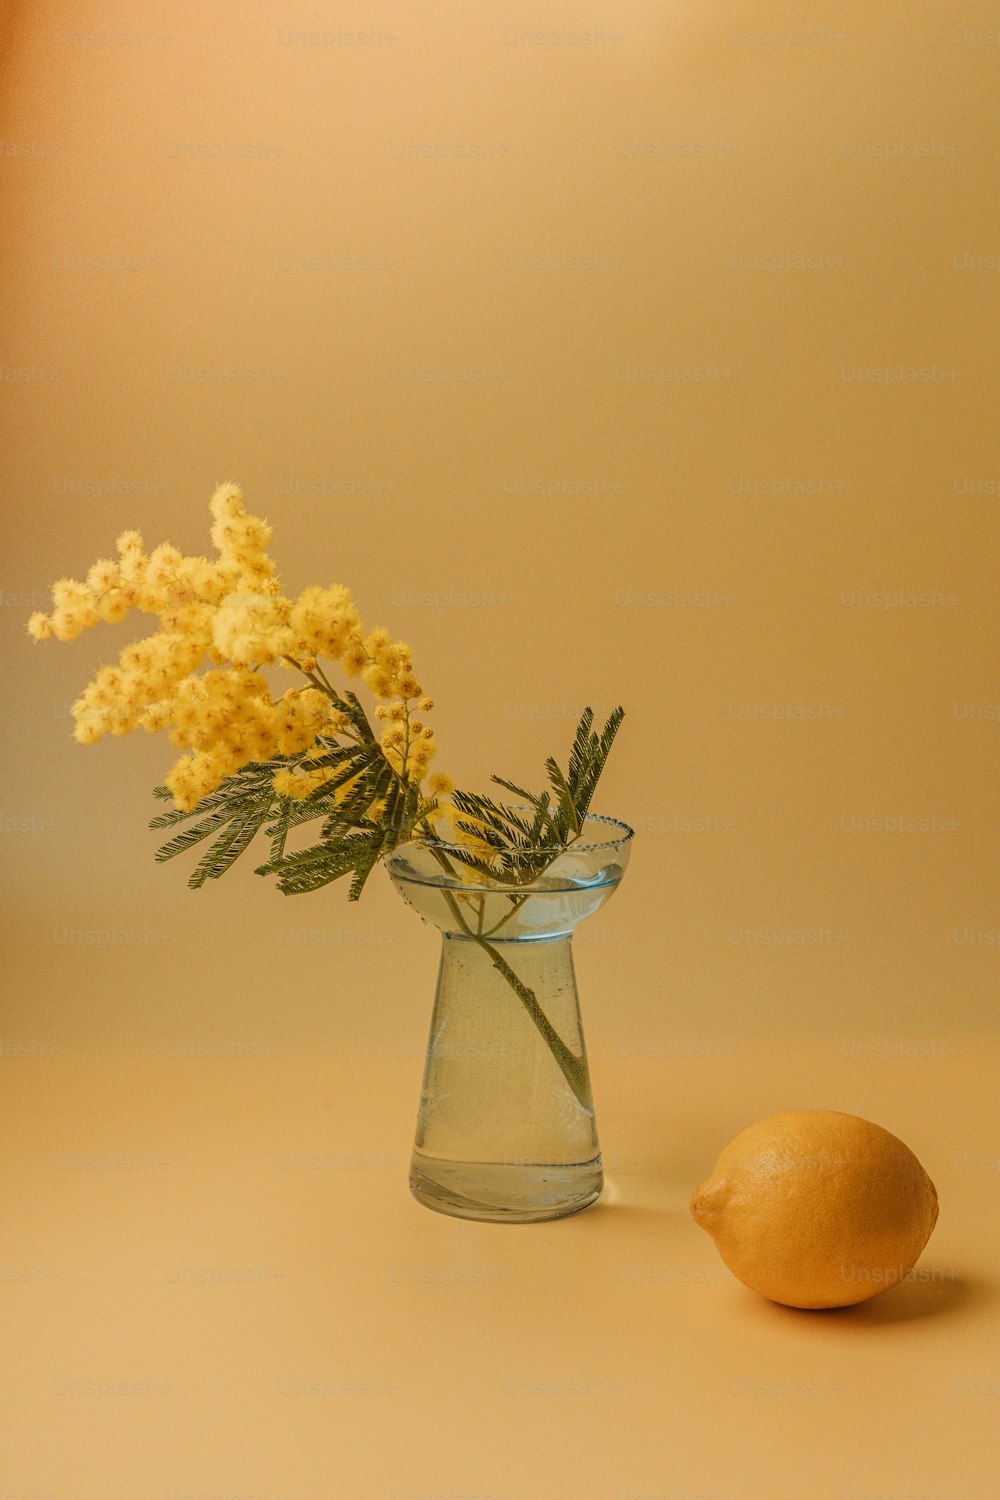 une fleur jaune dans un vase en verre à côté d’un citron